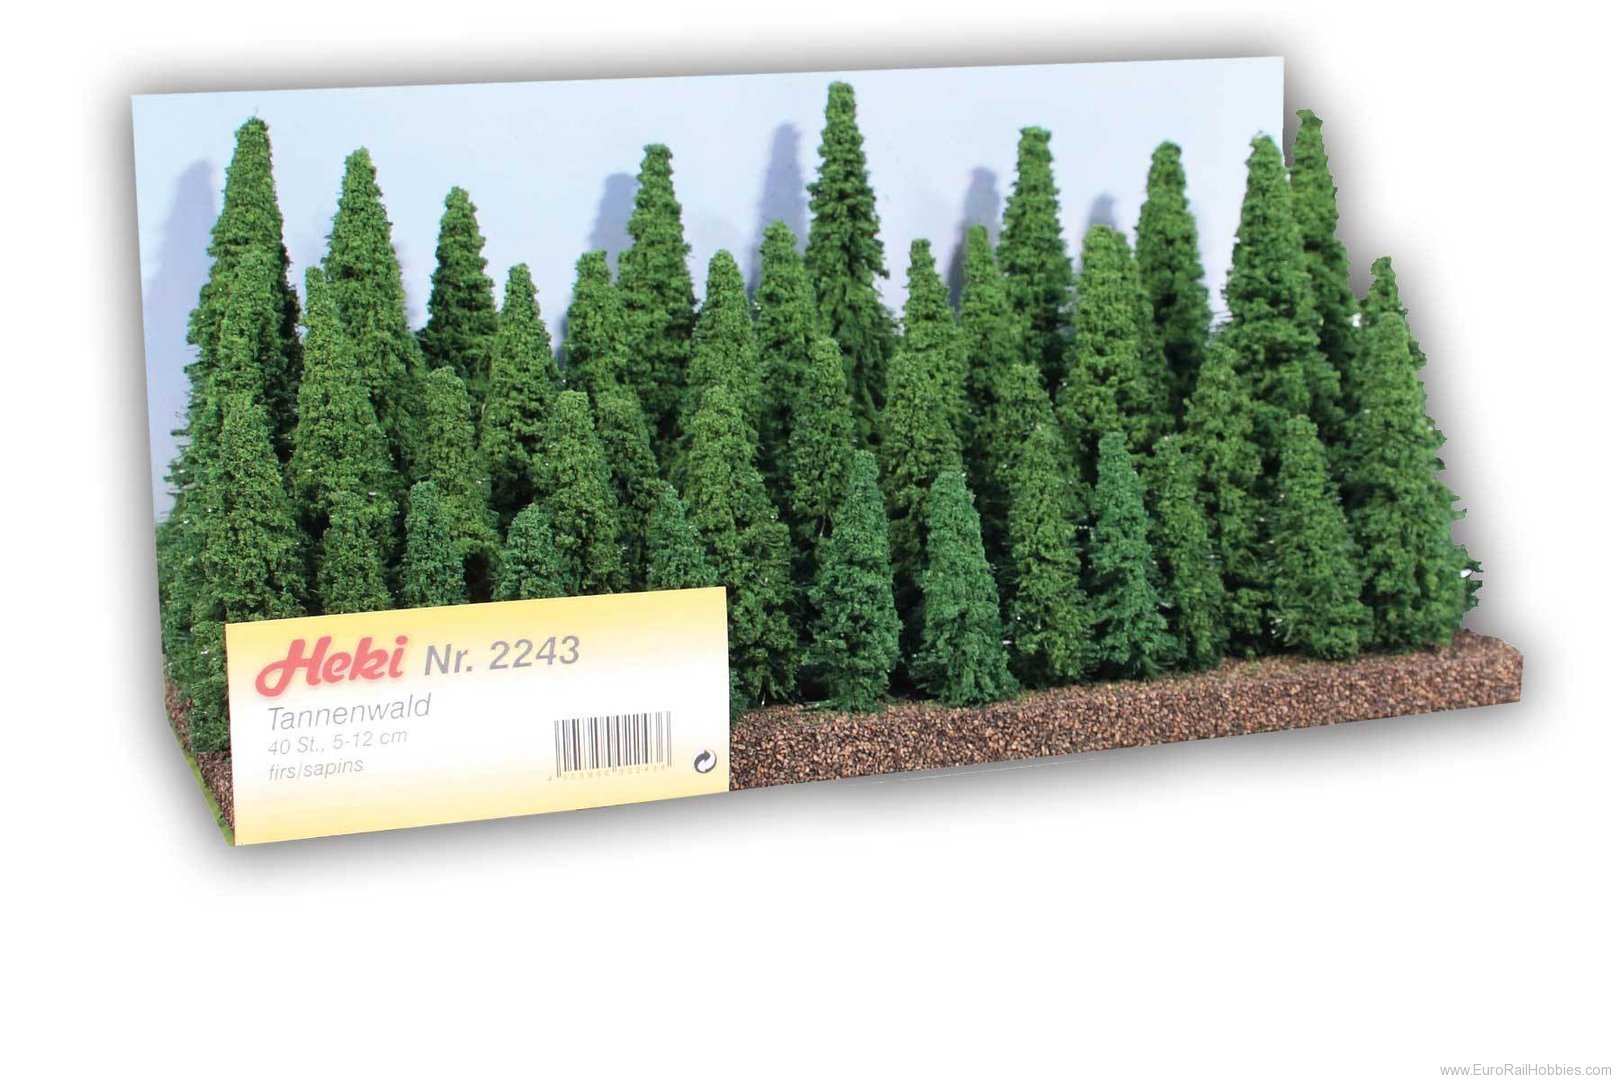 Heki 2243 Fir Forest, 40 Trees 5-12 cm